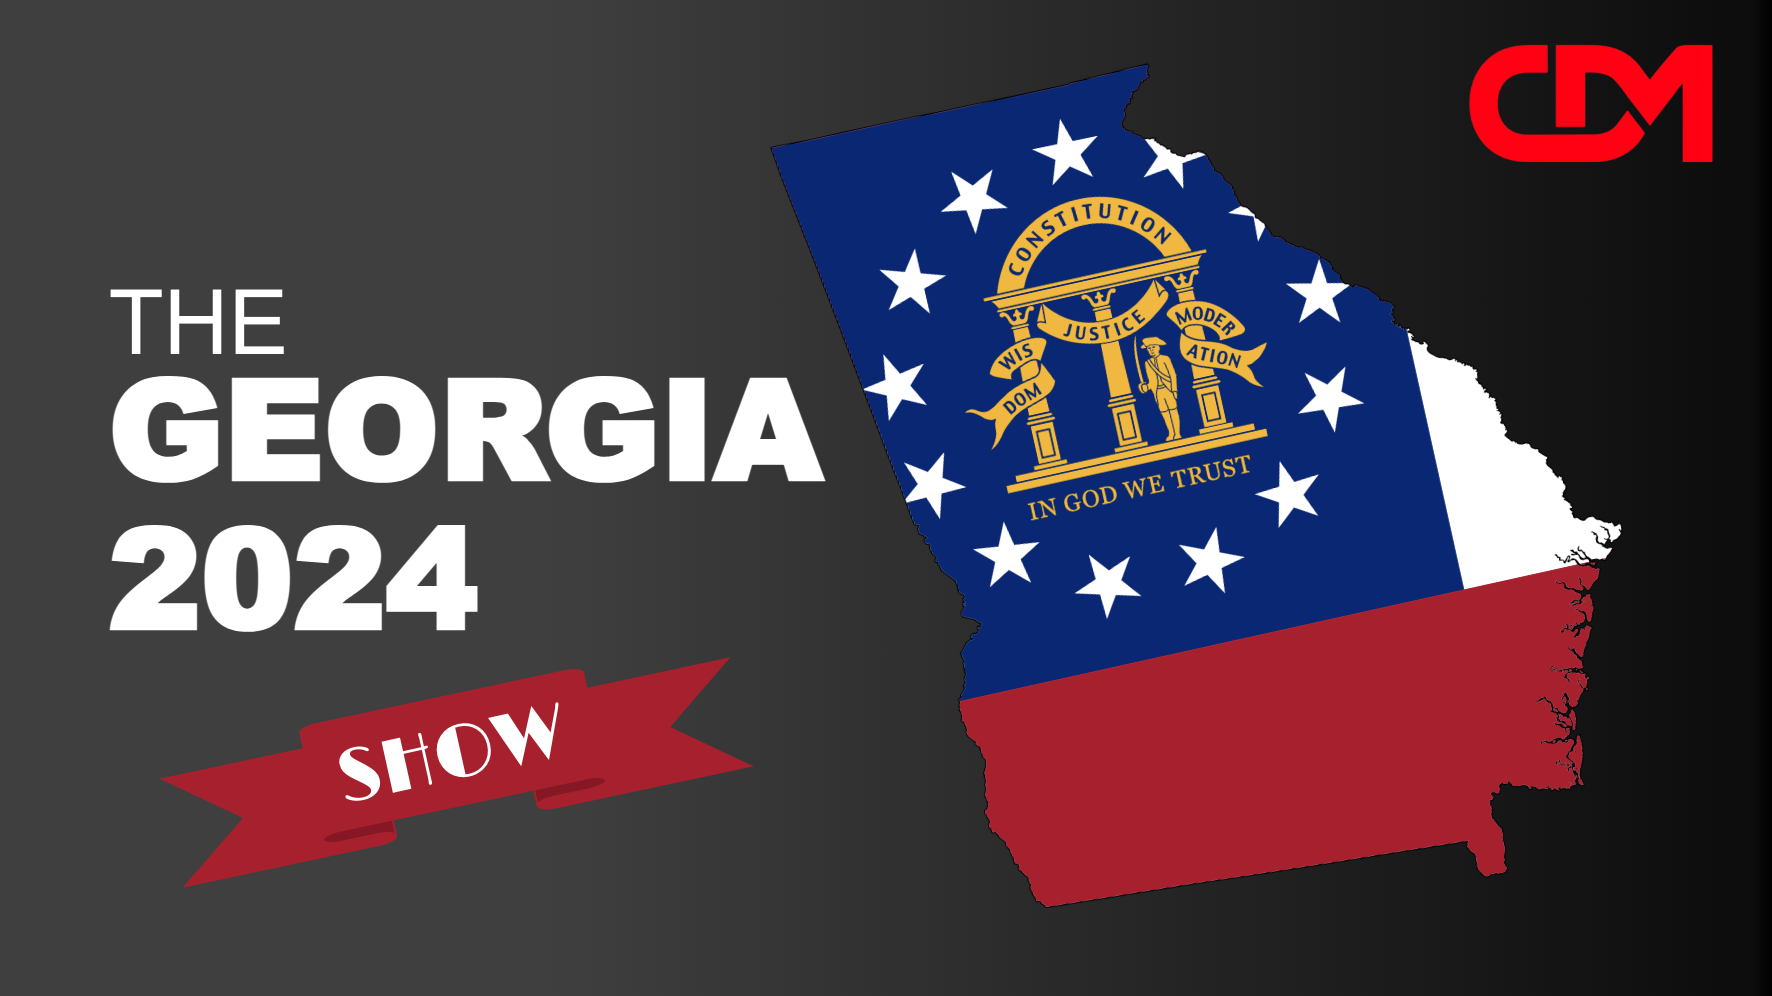 LIVE 7pm EST: The Georgia 2024 Show! With David Cross, Dr. Harvey Risch